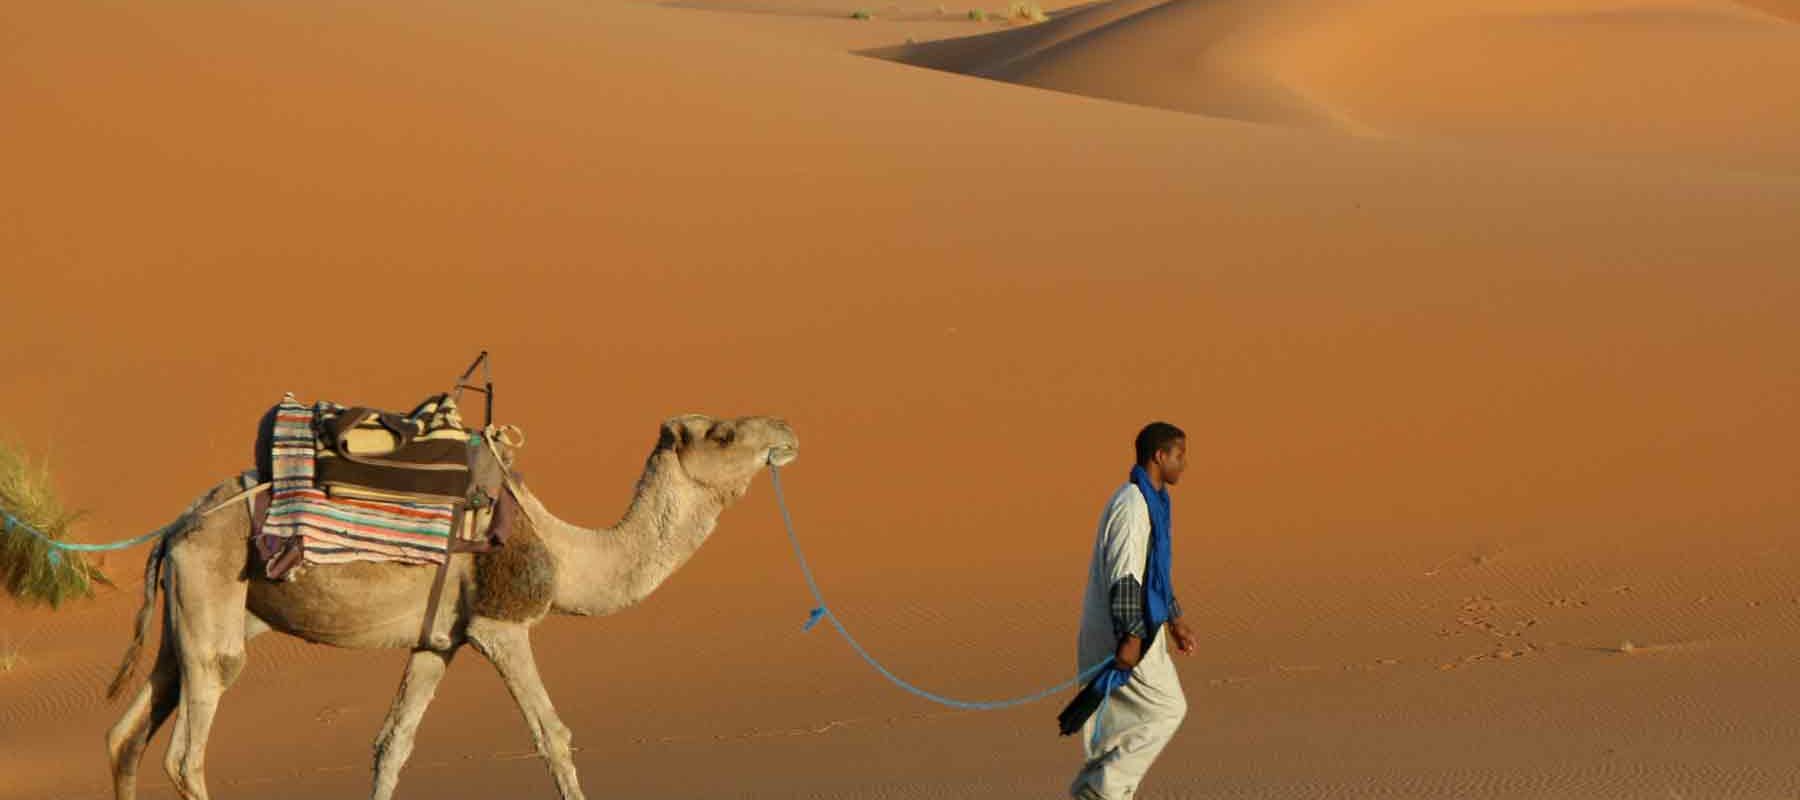 Camel and tourist traversing Sahara desert